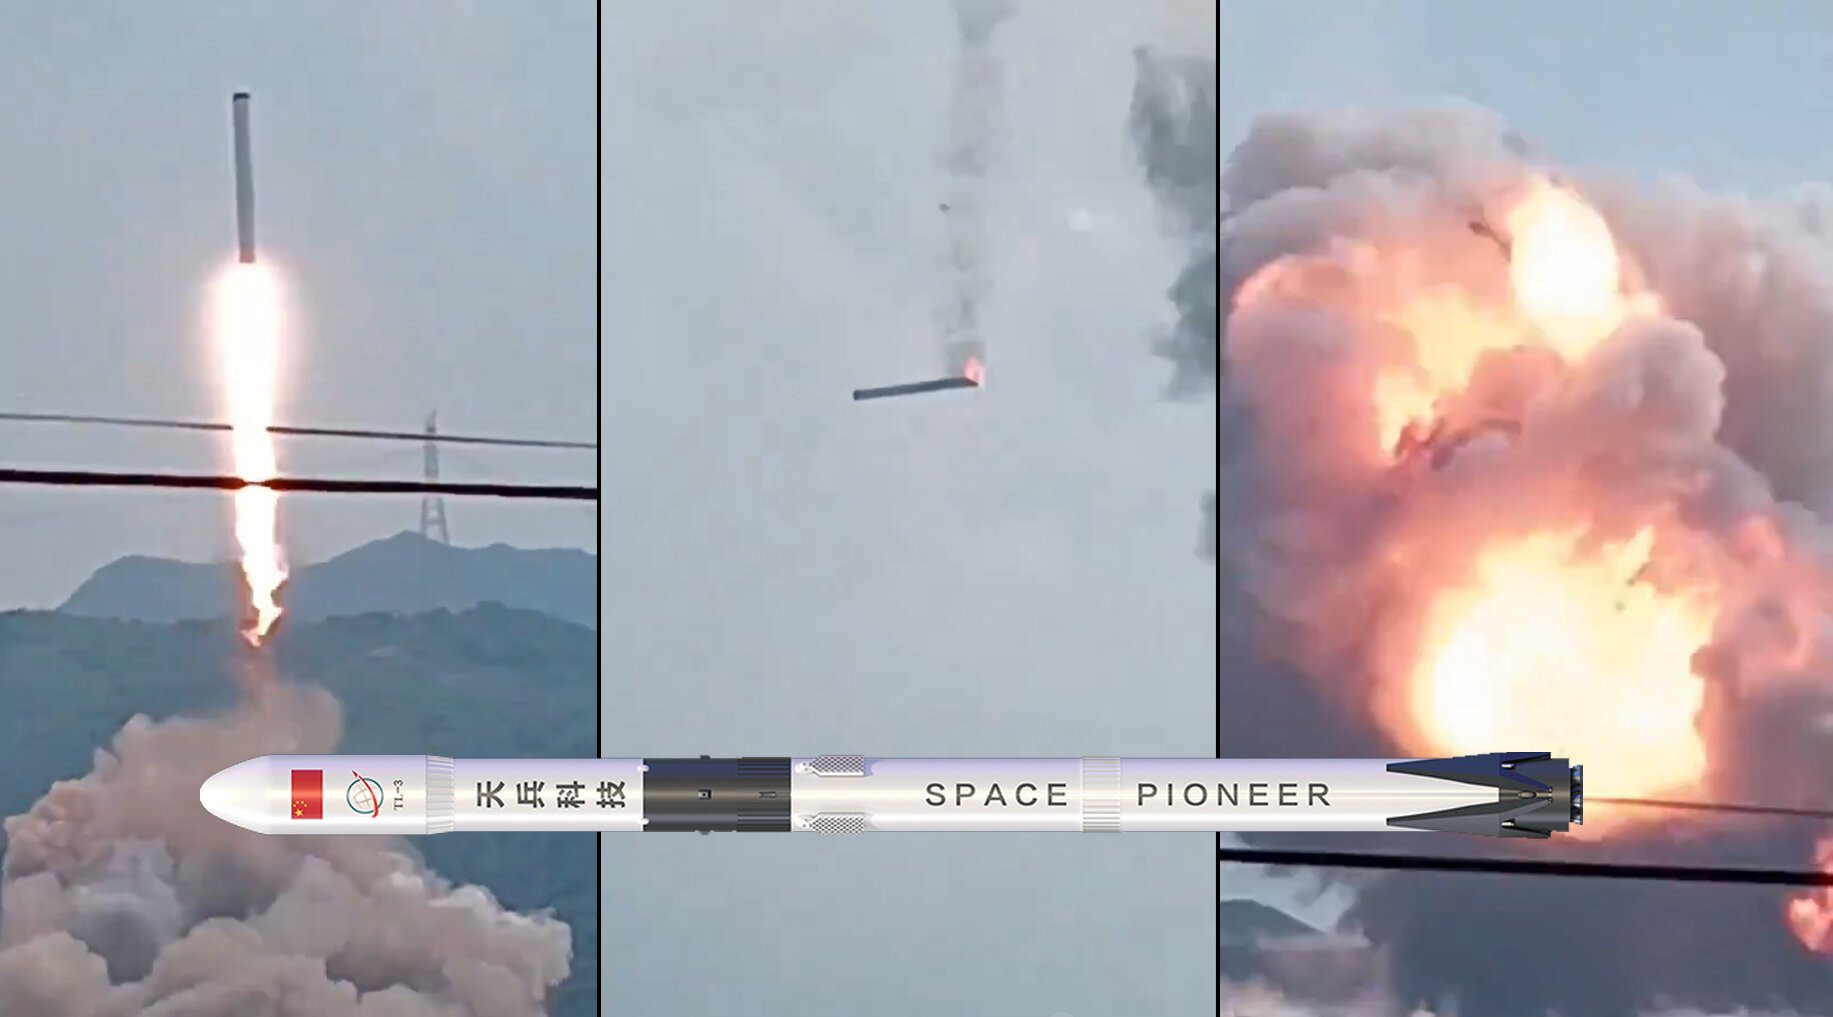 Thiết kiết tên lửa đẩy Thiên Long 3 của Space Pioneer.